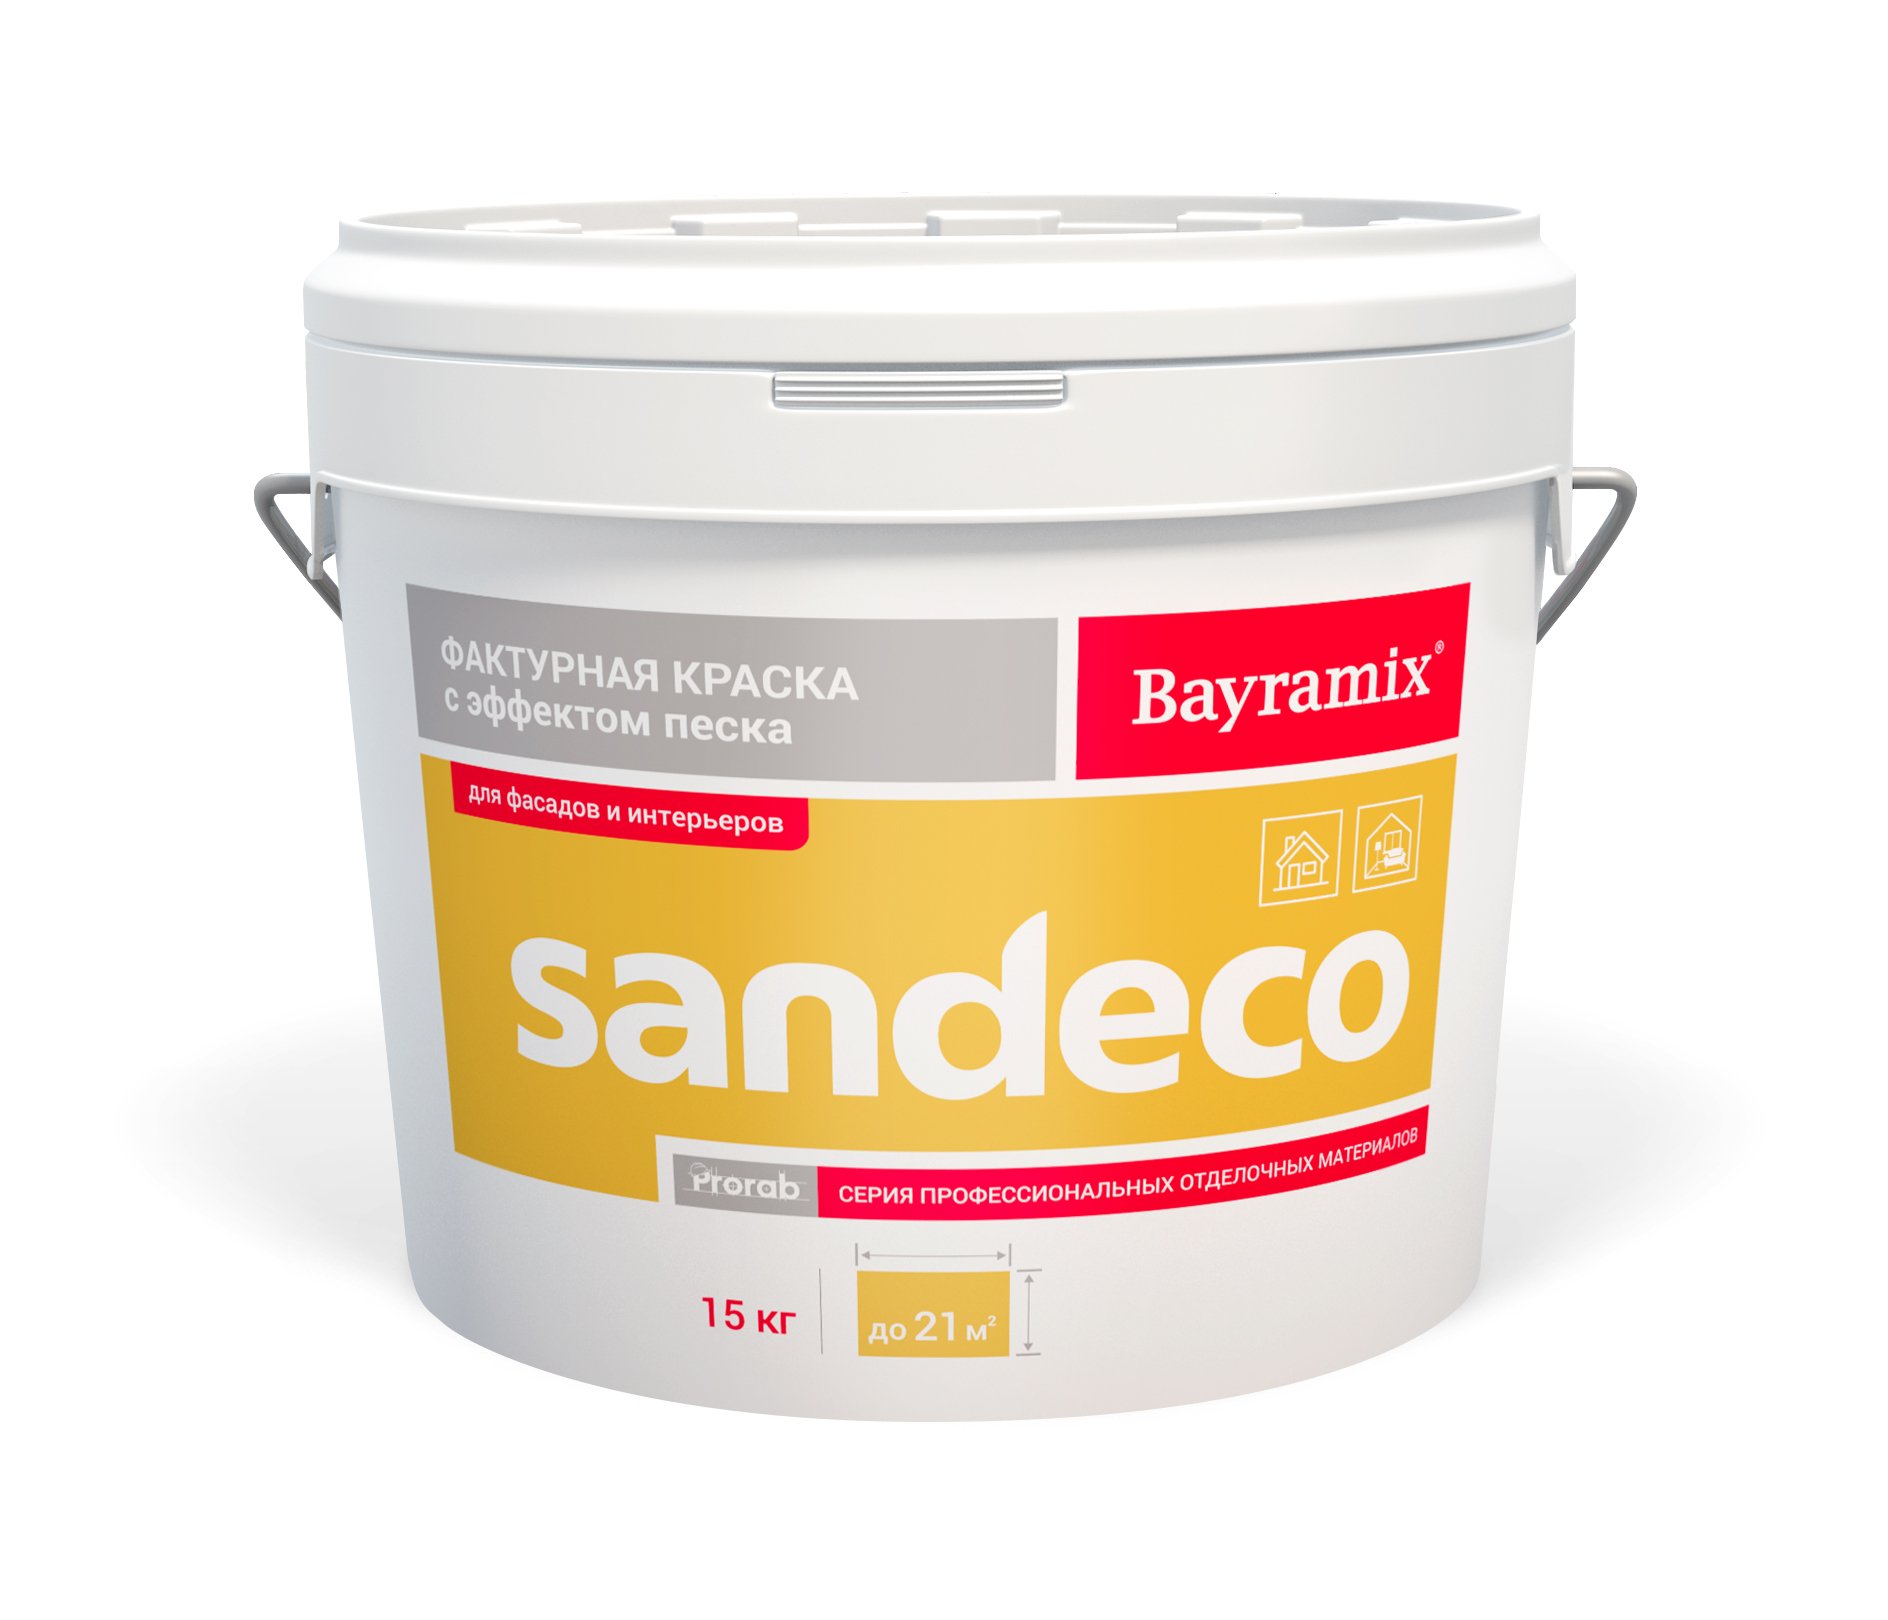 Фактурная краска Bayramix Sandeco для наружных и внутренних работ, 15 кг акриловый паропроницаемый герметик мастика для внутренних и наружных работ vgt